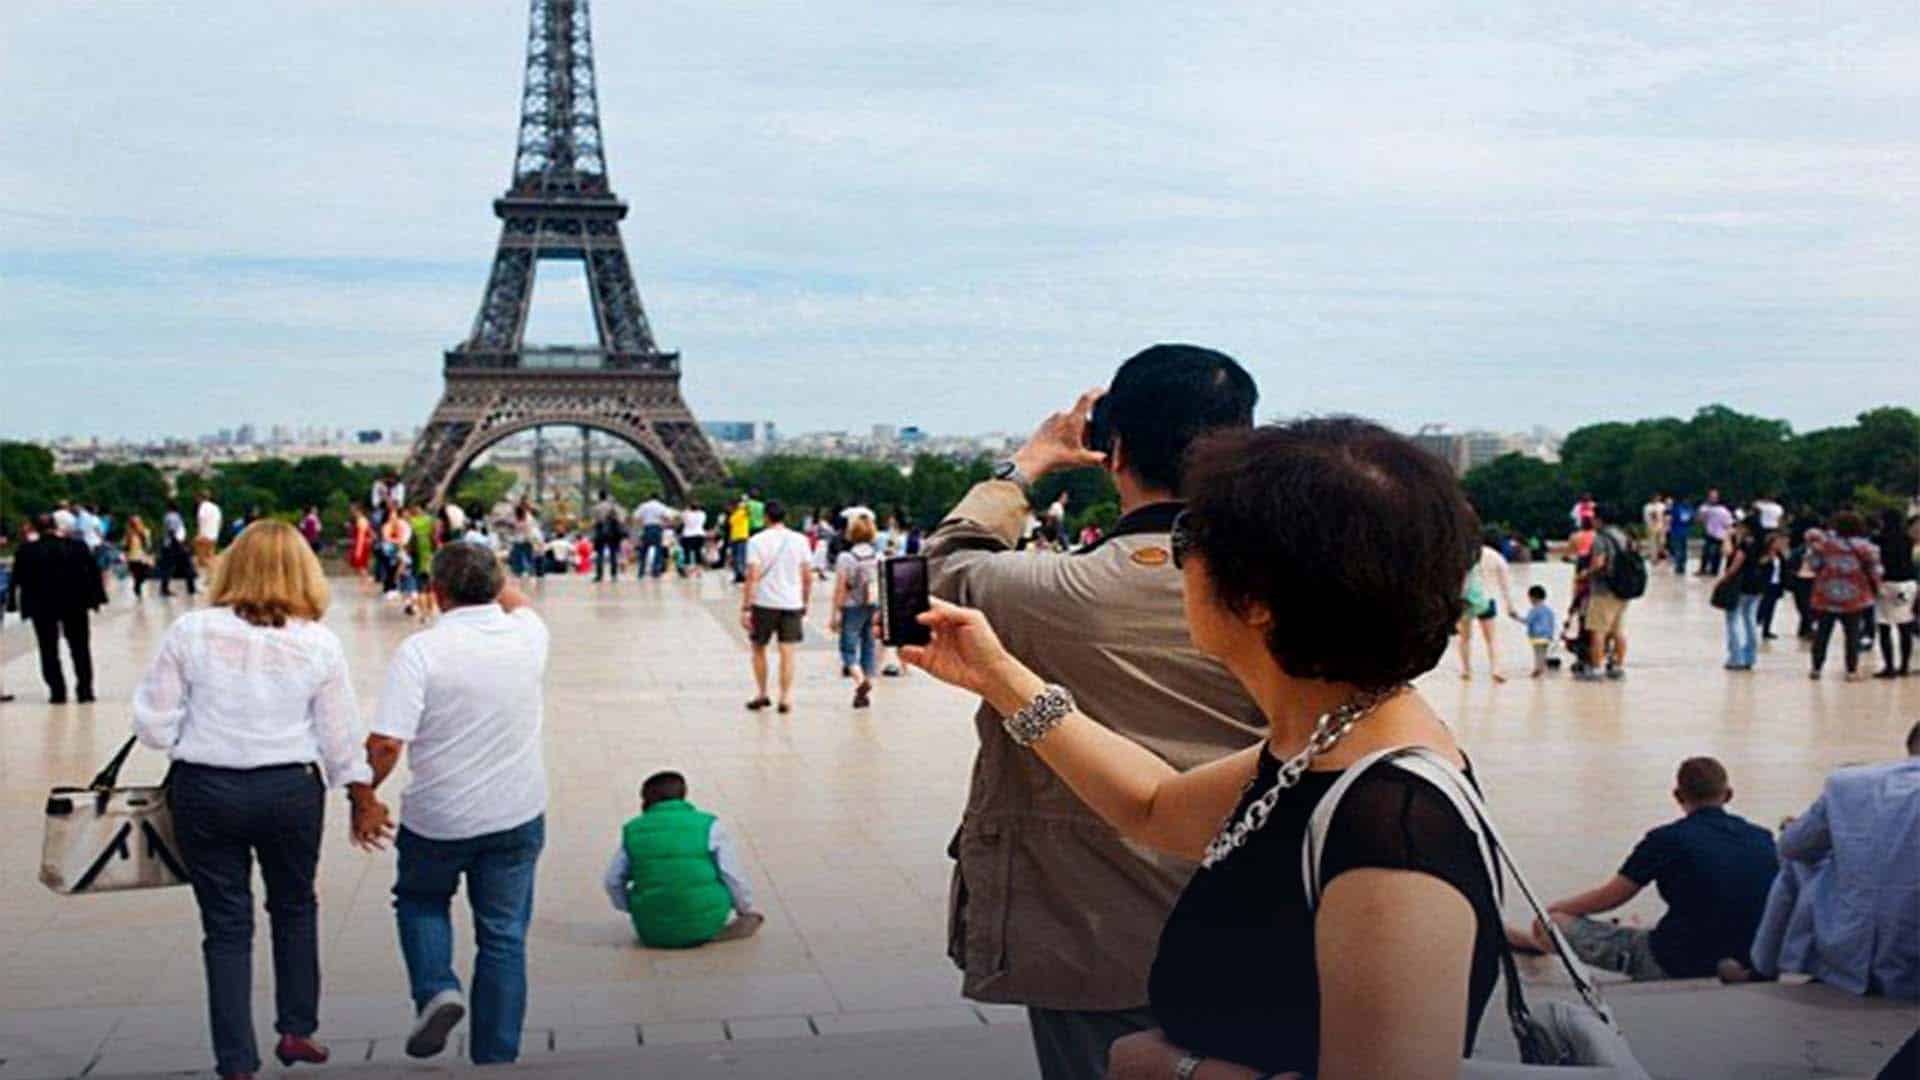 Les visiteurs internationaux encore plus présents - DepositPhotos.com